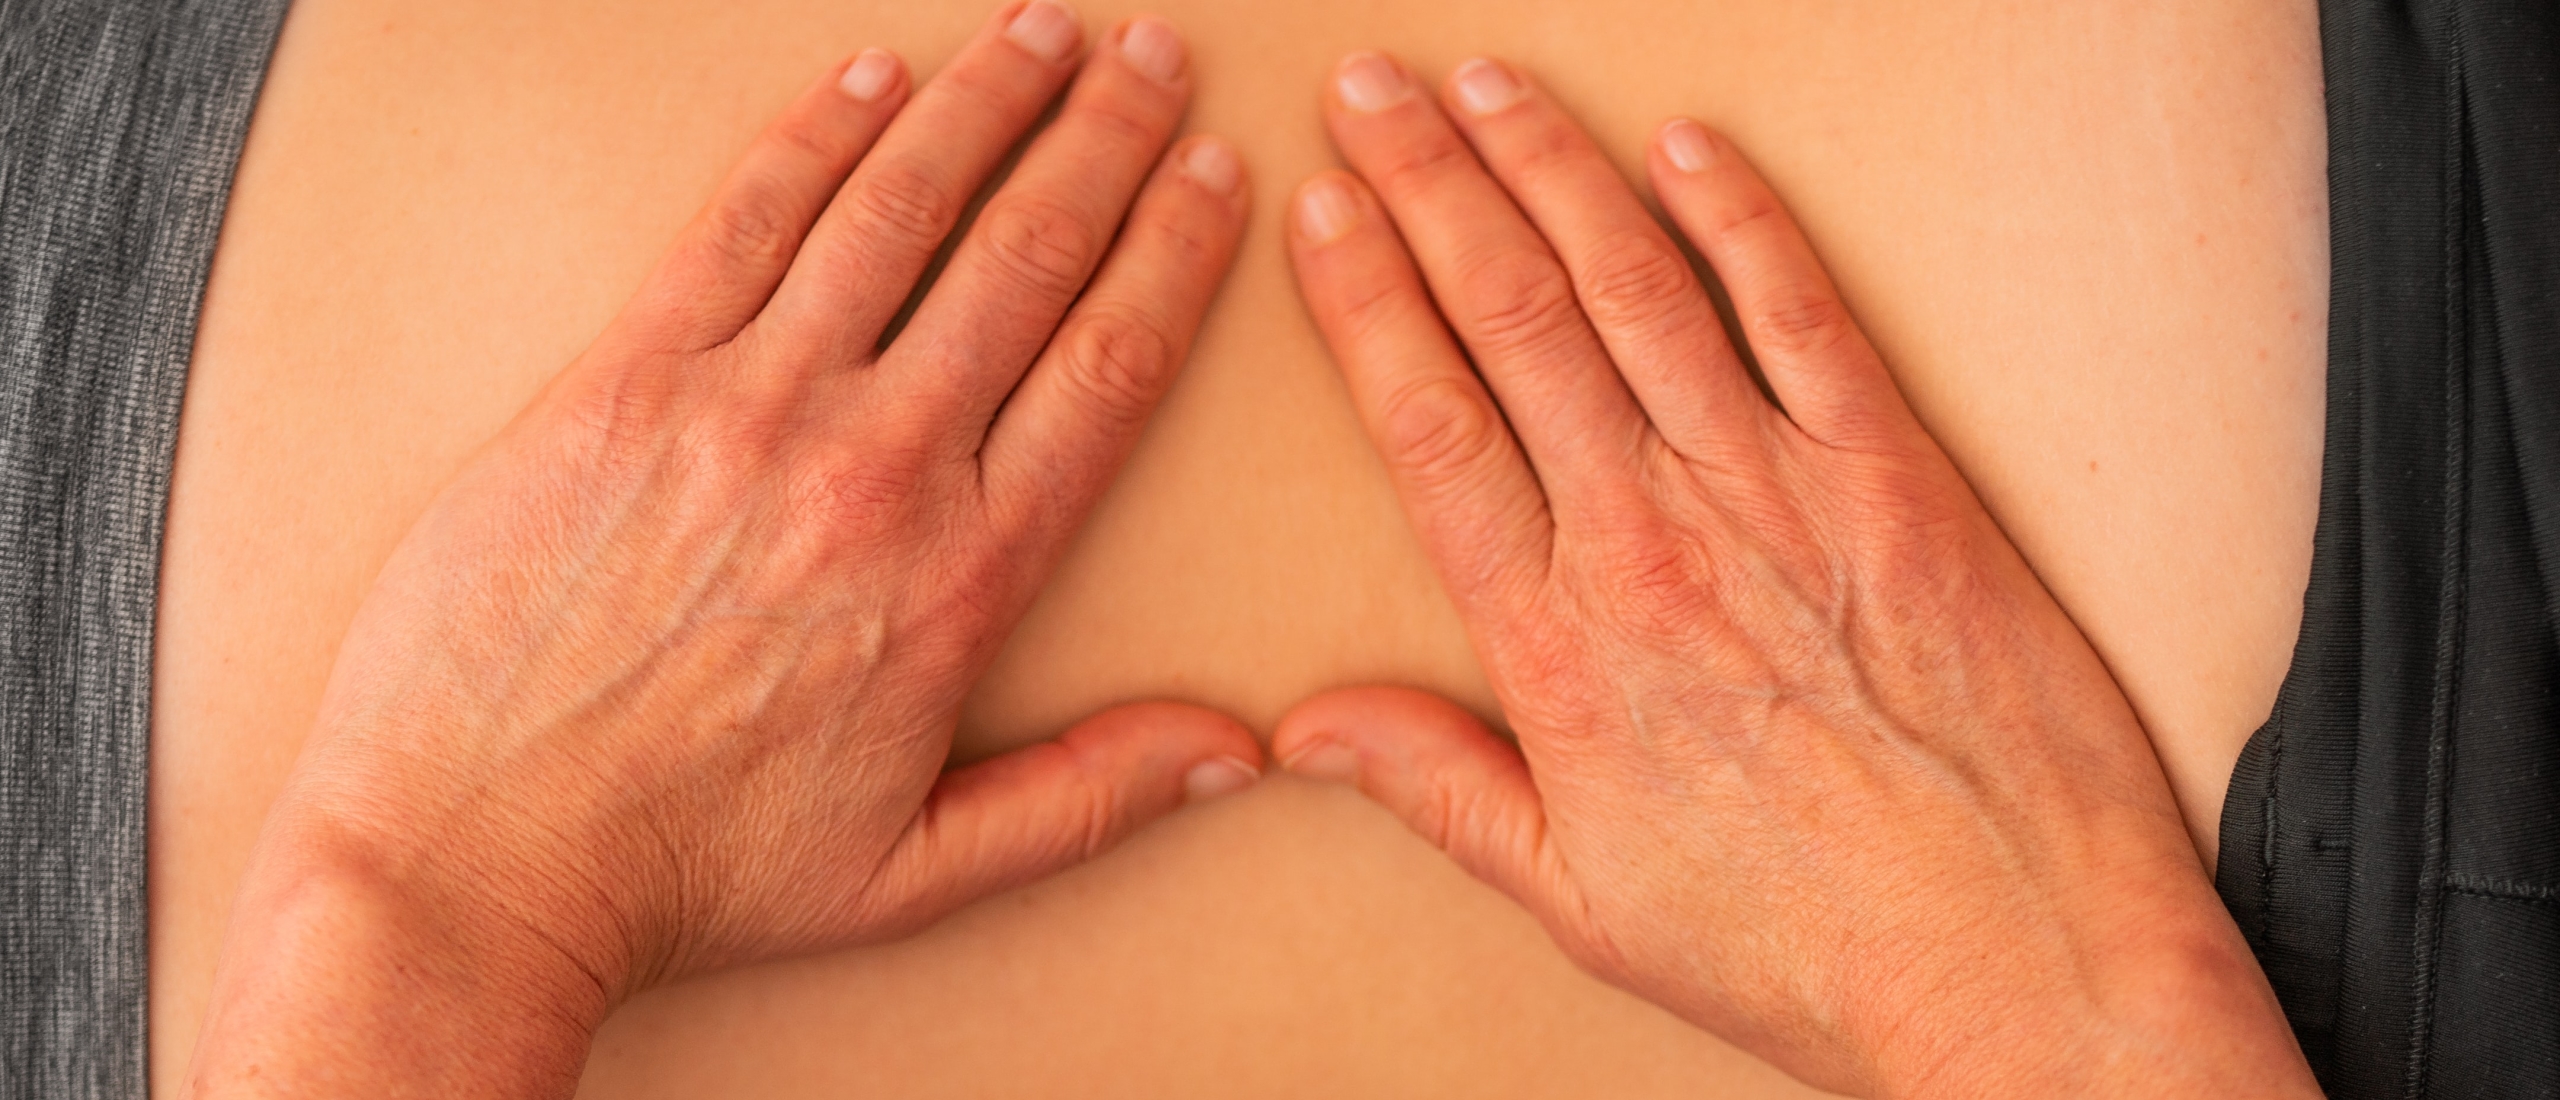 10 massagetips voor een goede massage